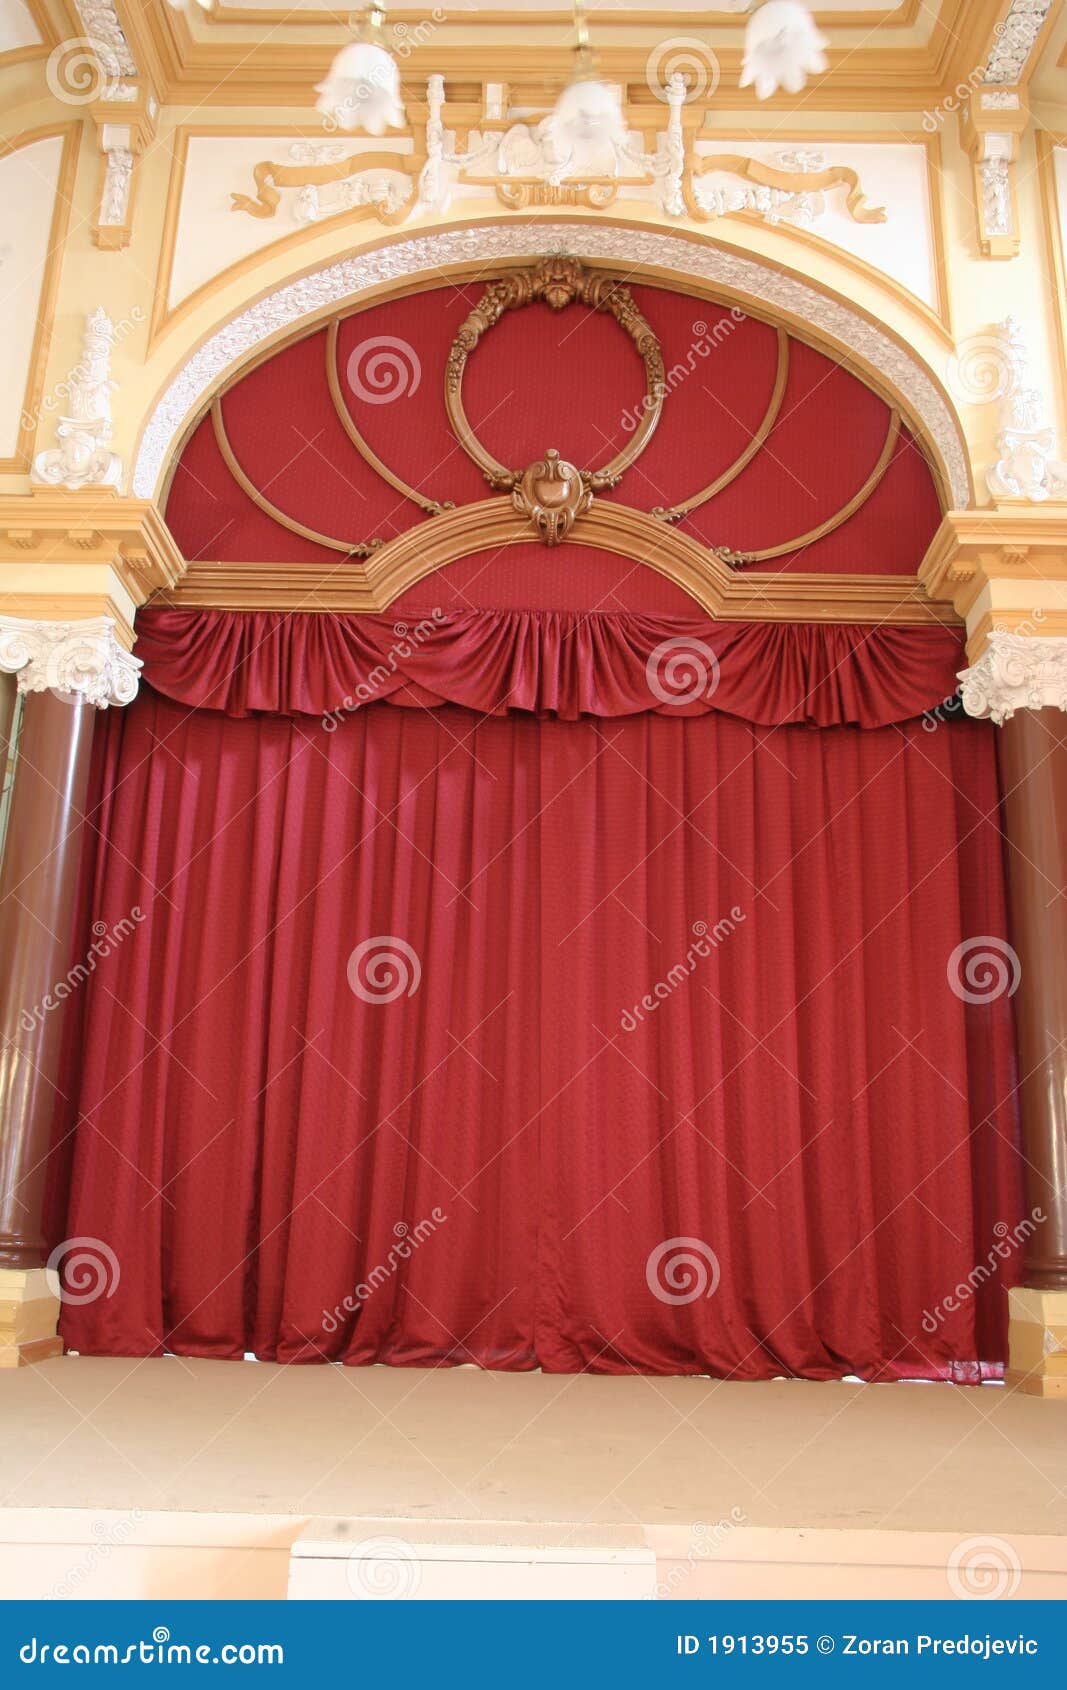 red velvet theatre curtain